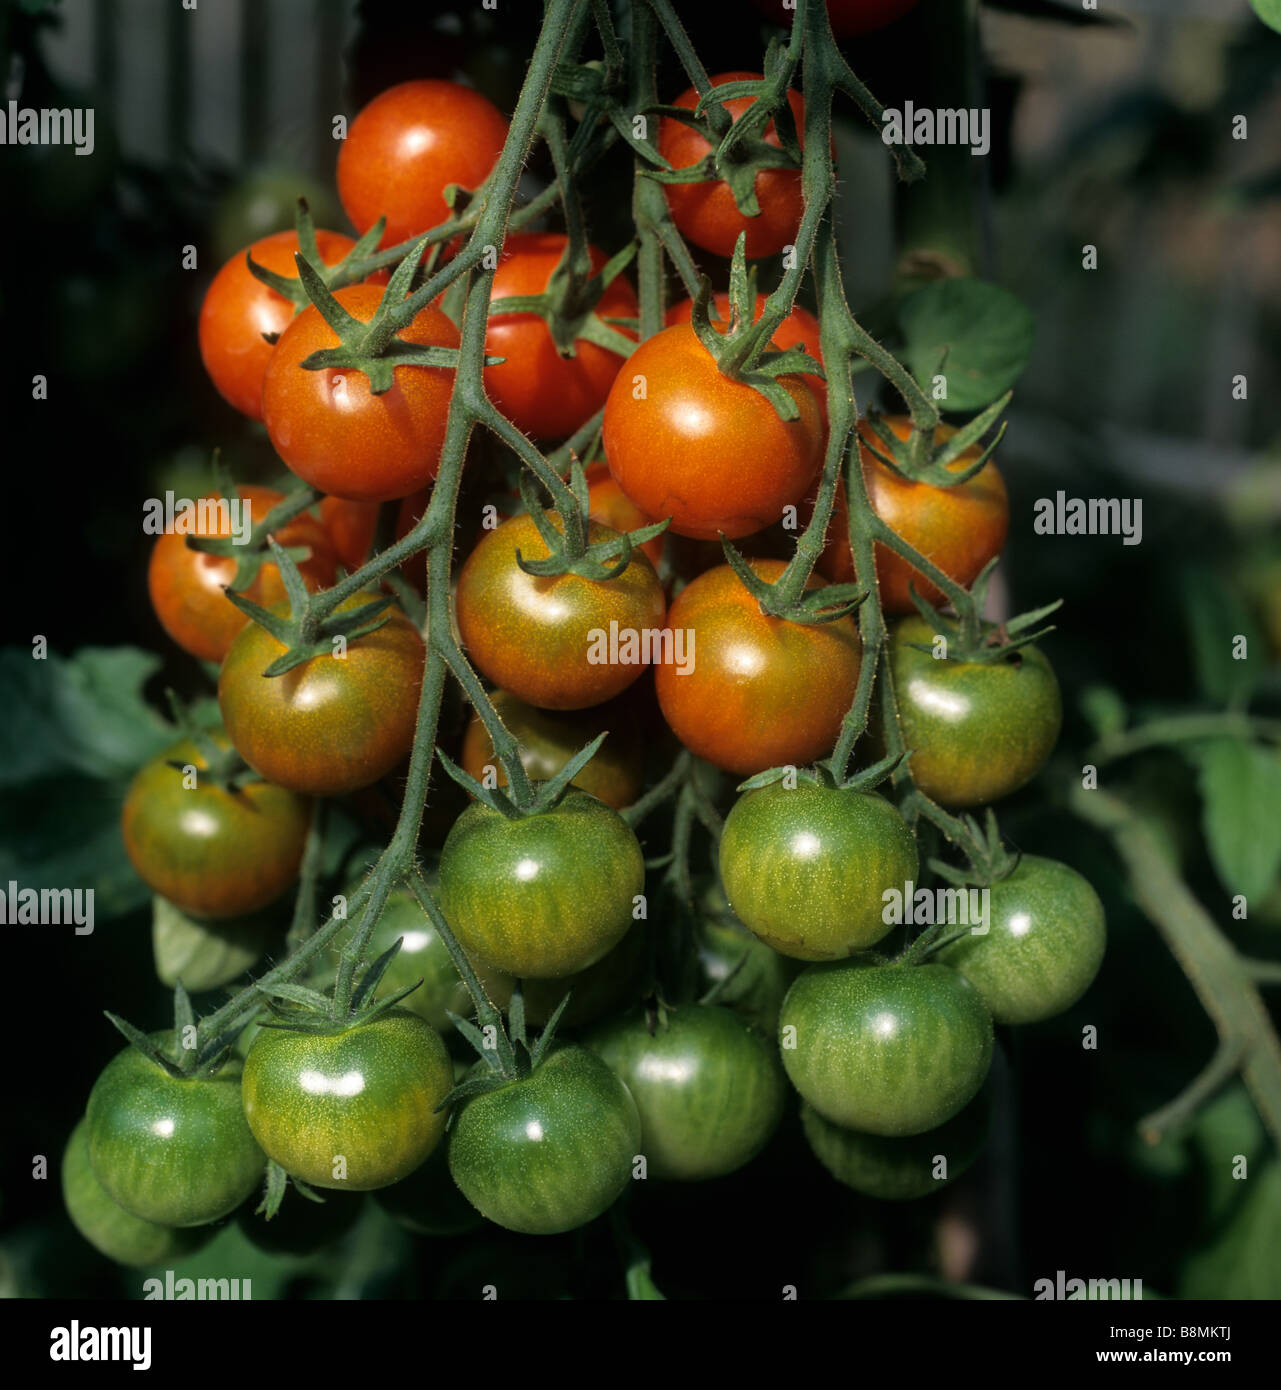 Armadura de maduración de tomates cherry delicia para los jardineros en un jardín invernadero Foto de stock